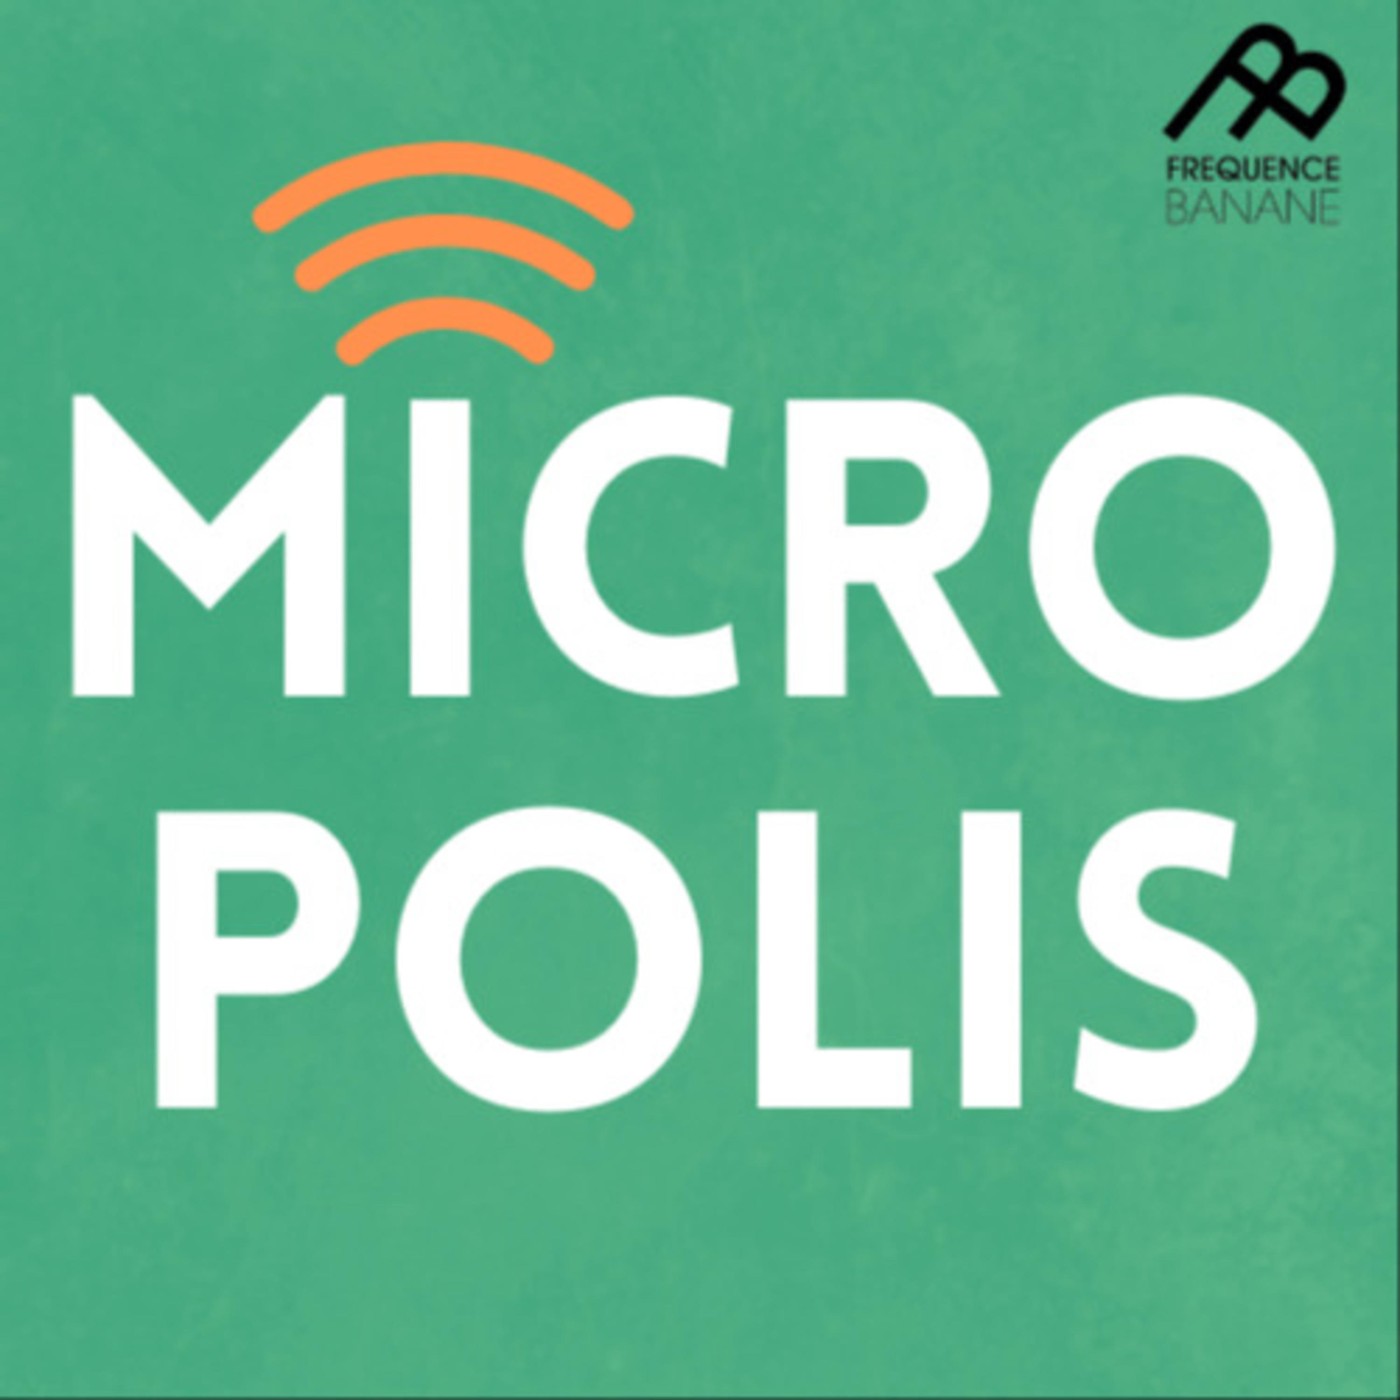 Micropolis du 09/03/20 - Voix 5 3/4 - Pop Culture